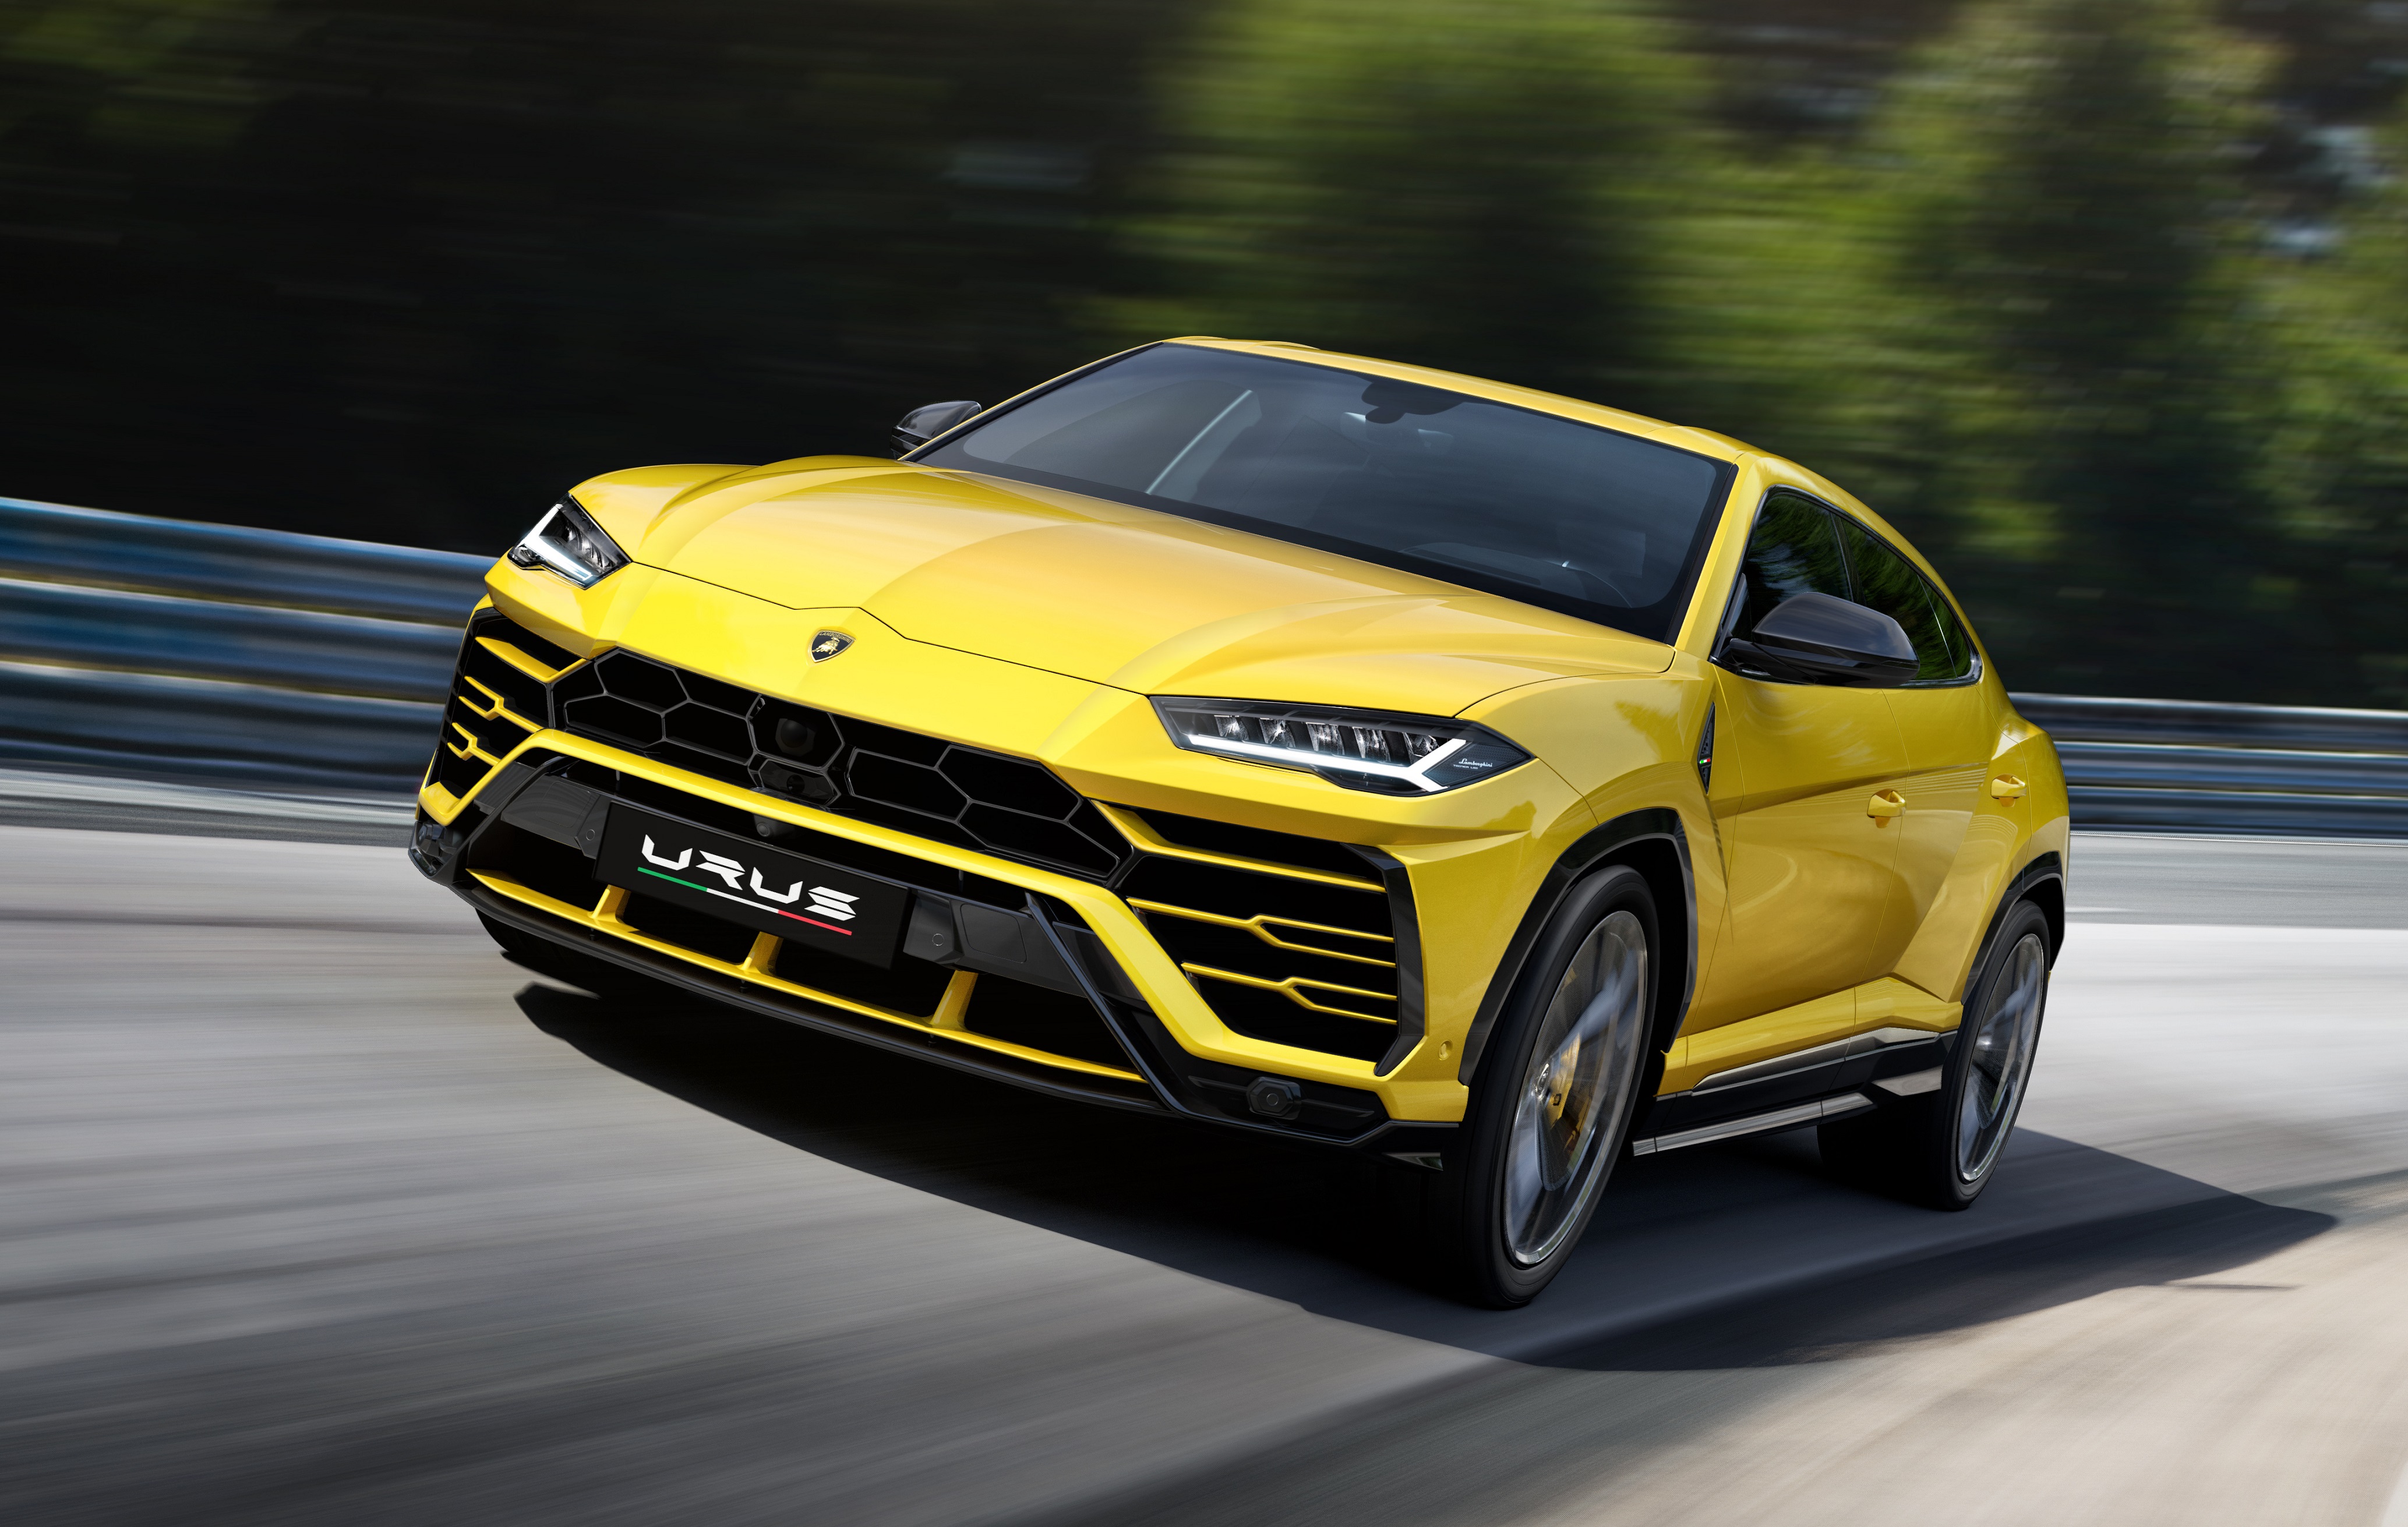 More Lamborghini Dreams: A super SUV offering 'ferocious' performance